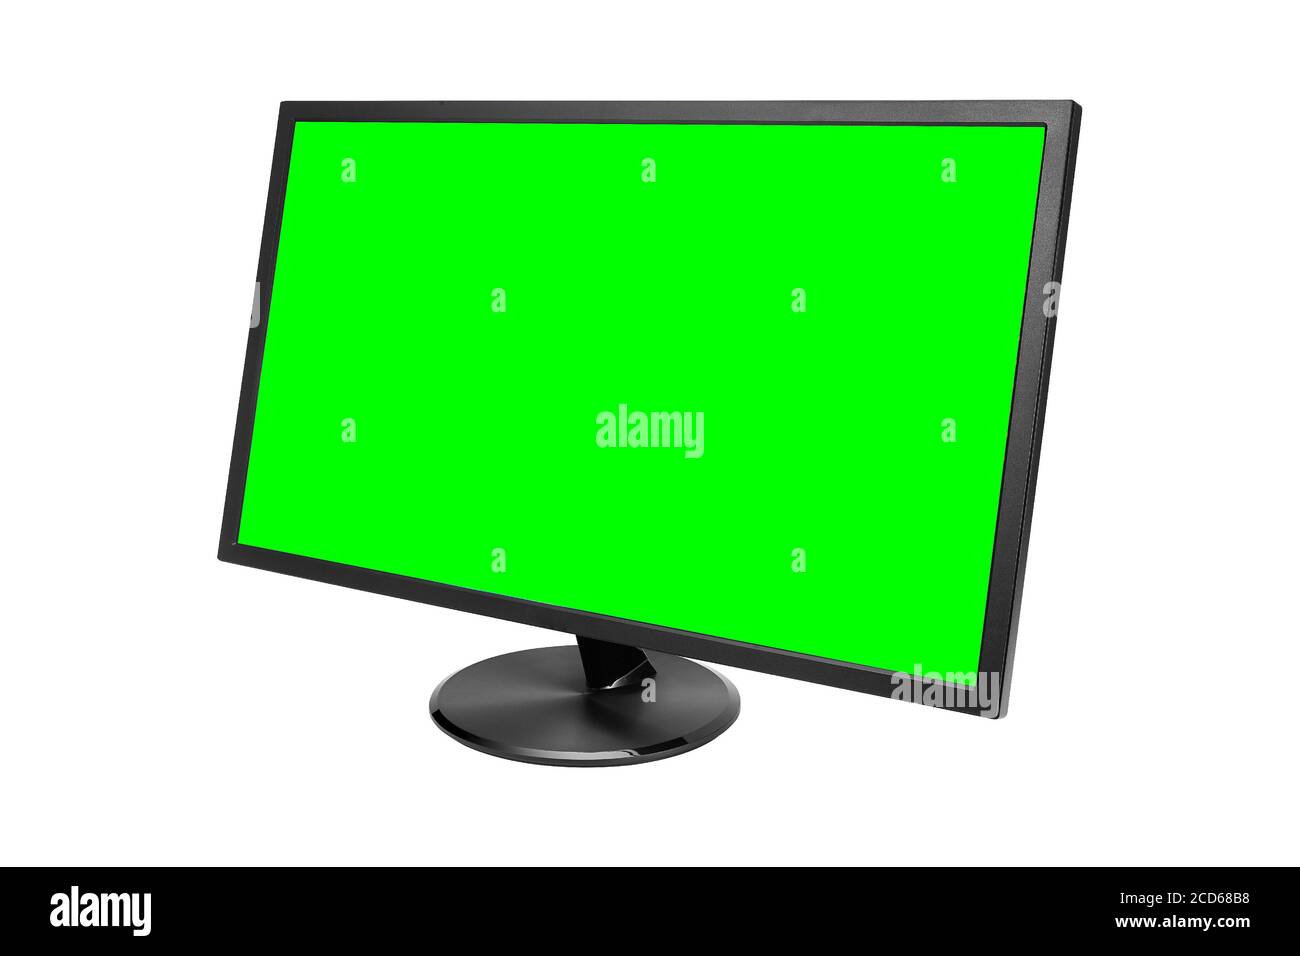 Moniteur d'ordinateur avec écran vert isolé sur fond blanc Banque D'Images